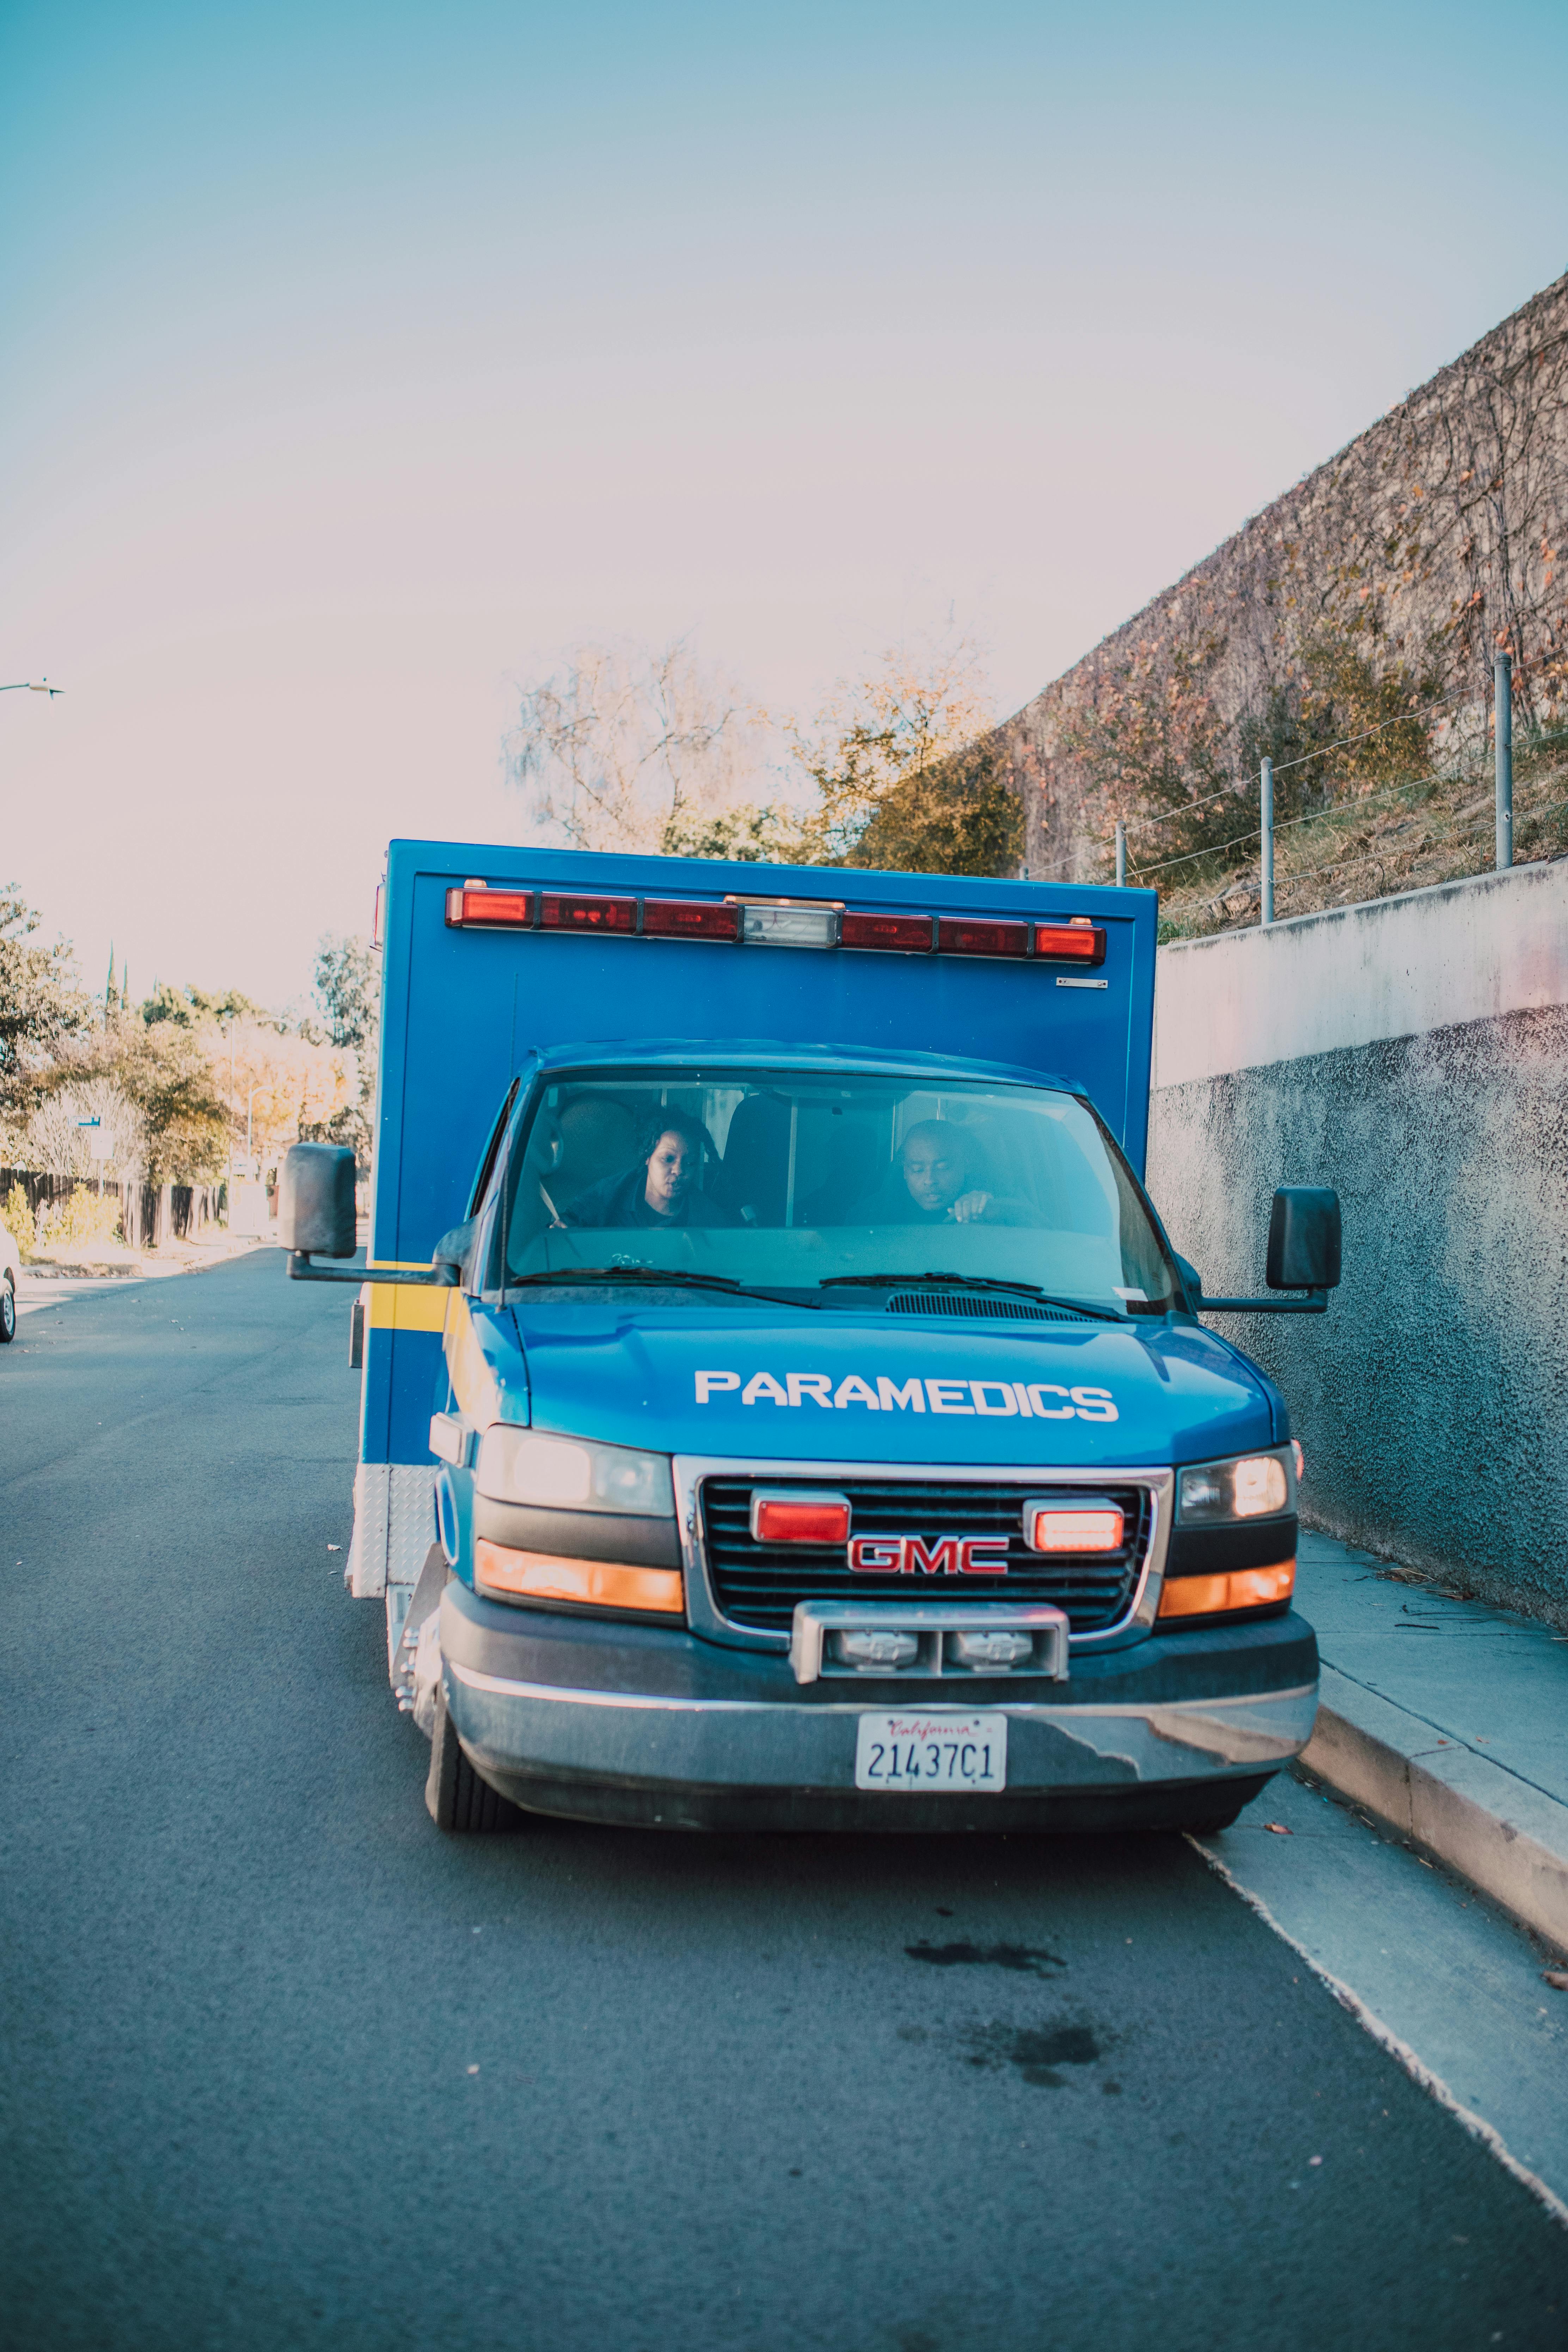 Ein blauer Krankenwagen parkt am Straßenrand | Quelle: Pexels